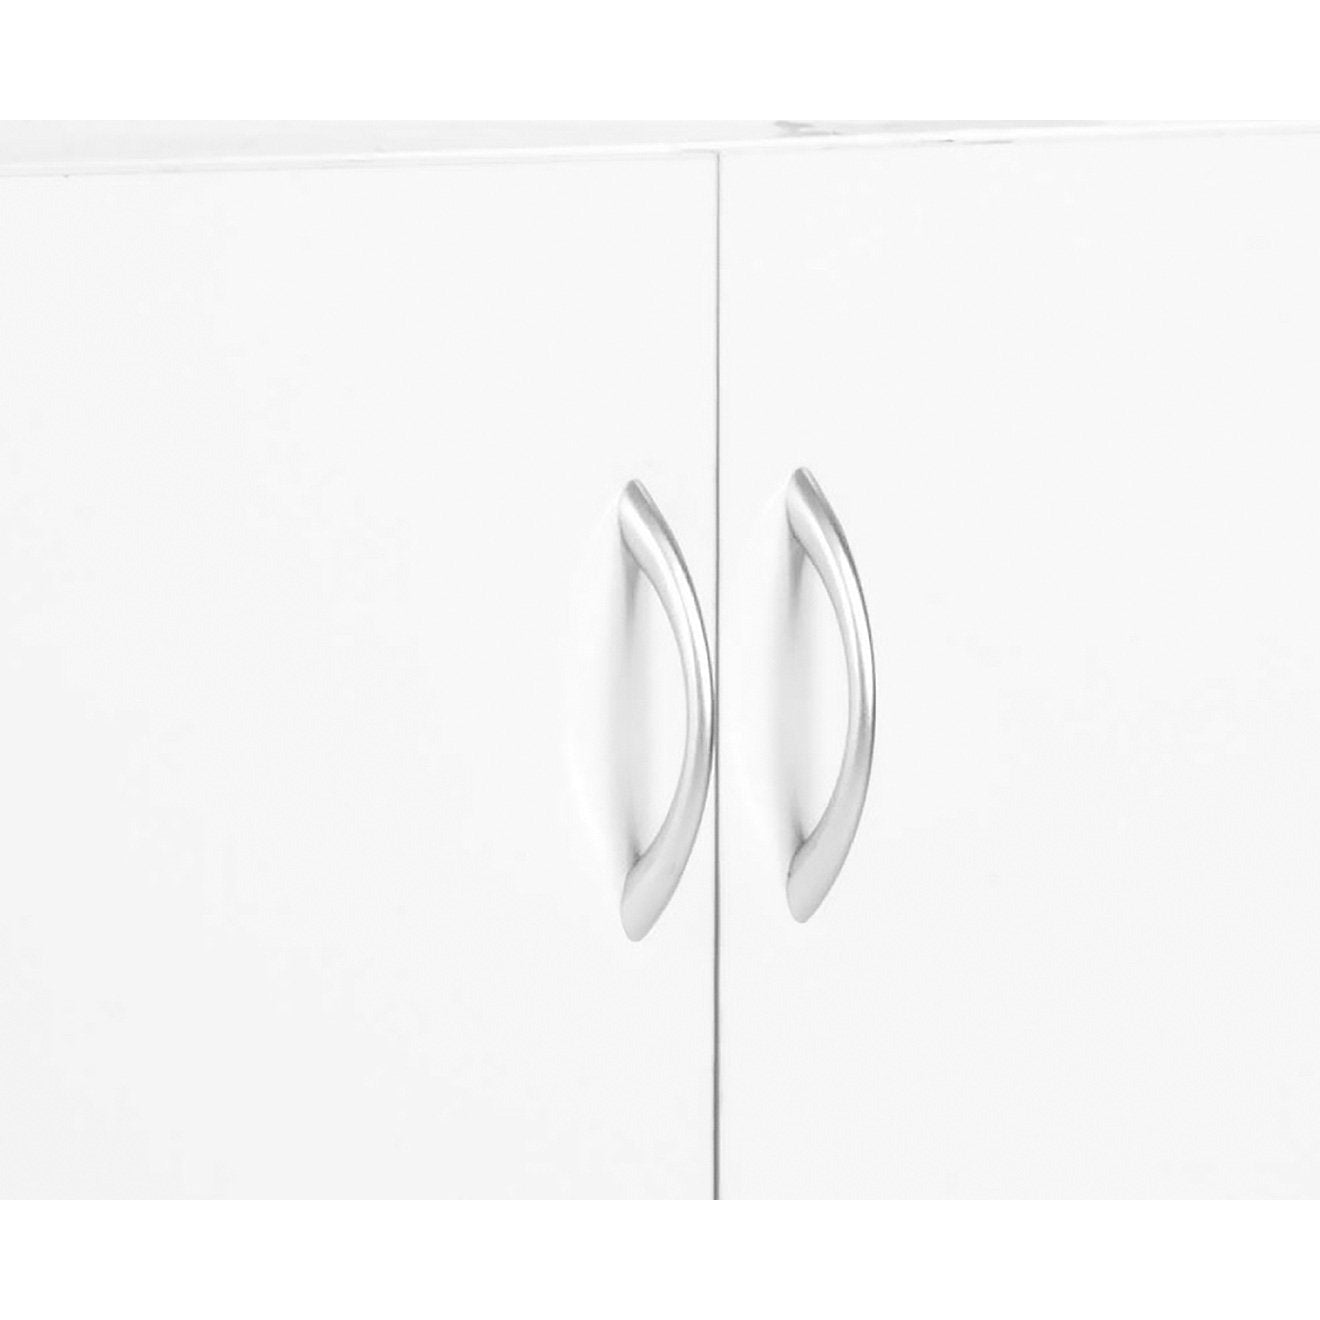 Sarantino New 21 Pairs Shoe Cabinet Rack Storage Organiser Shelf 2 Doors Cupboard White